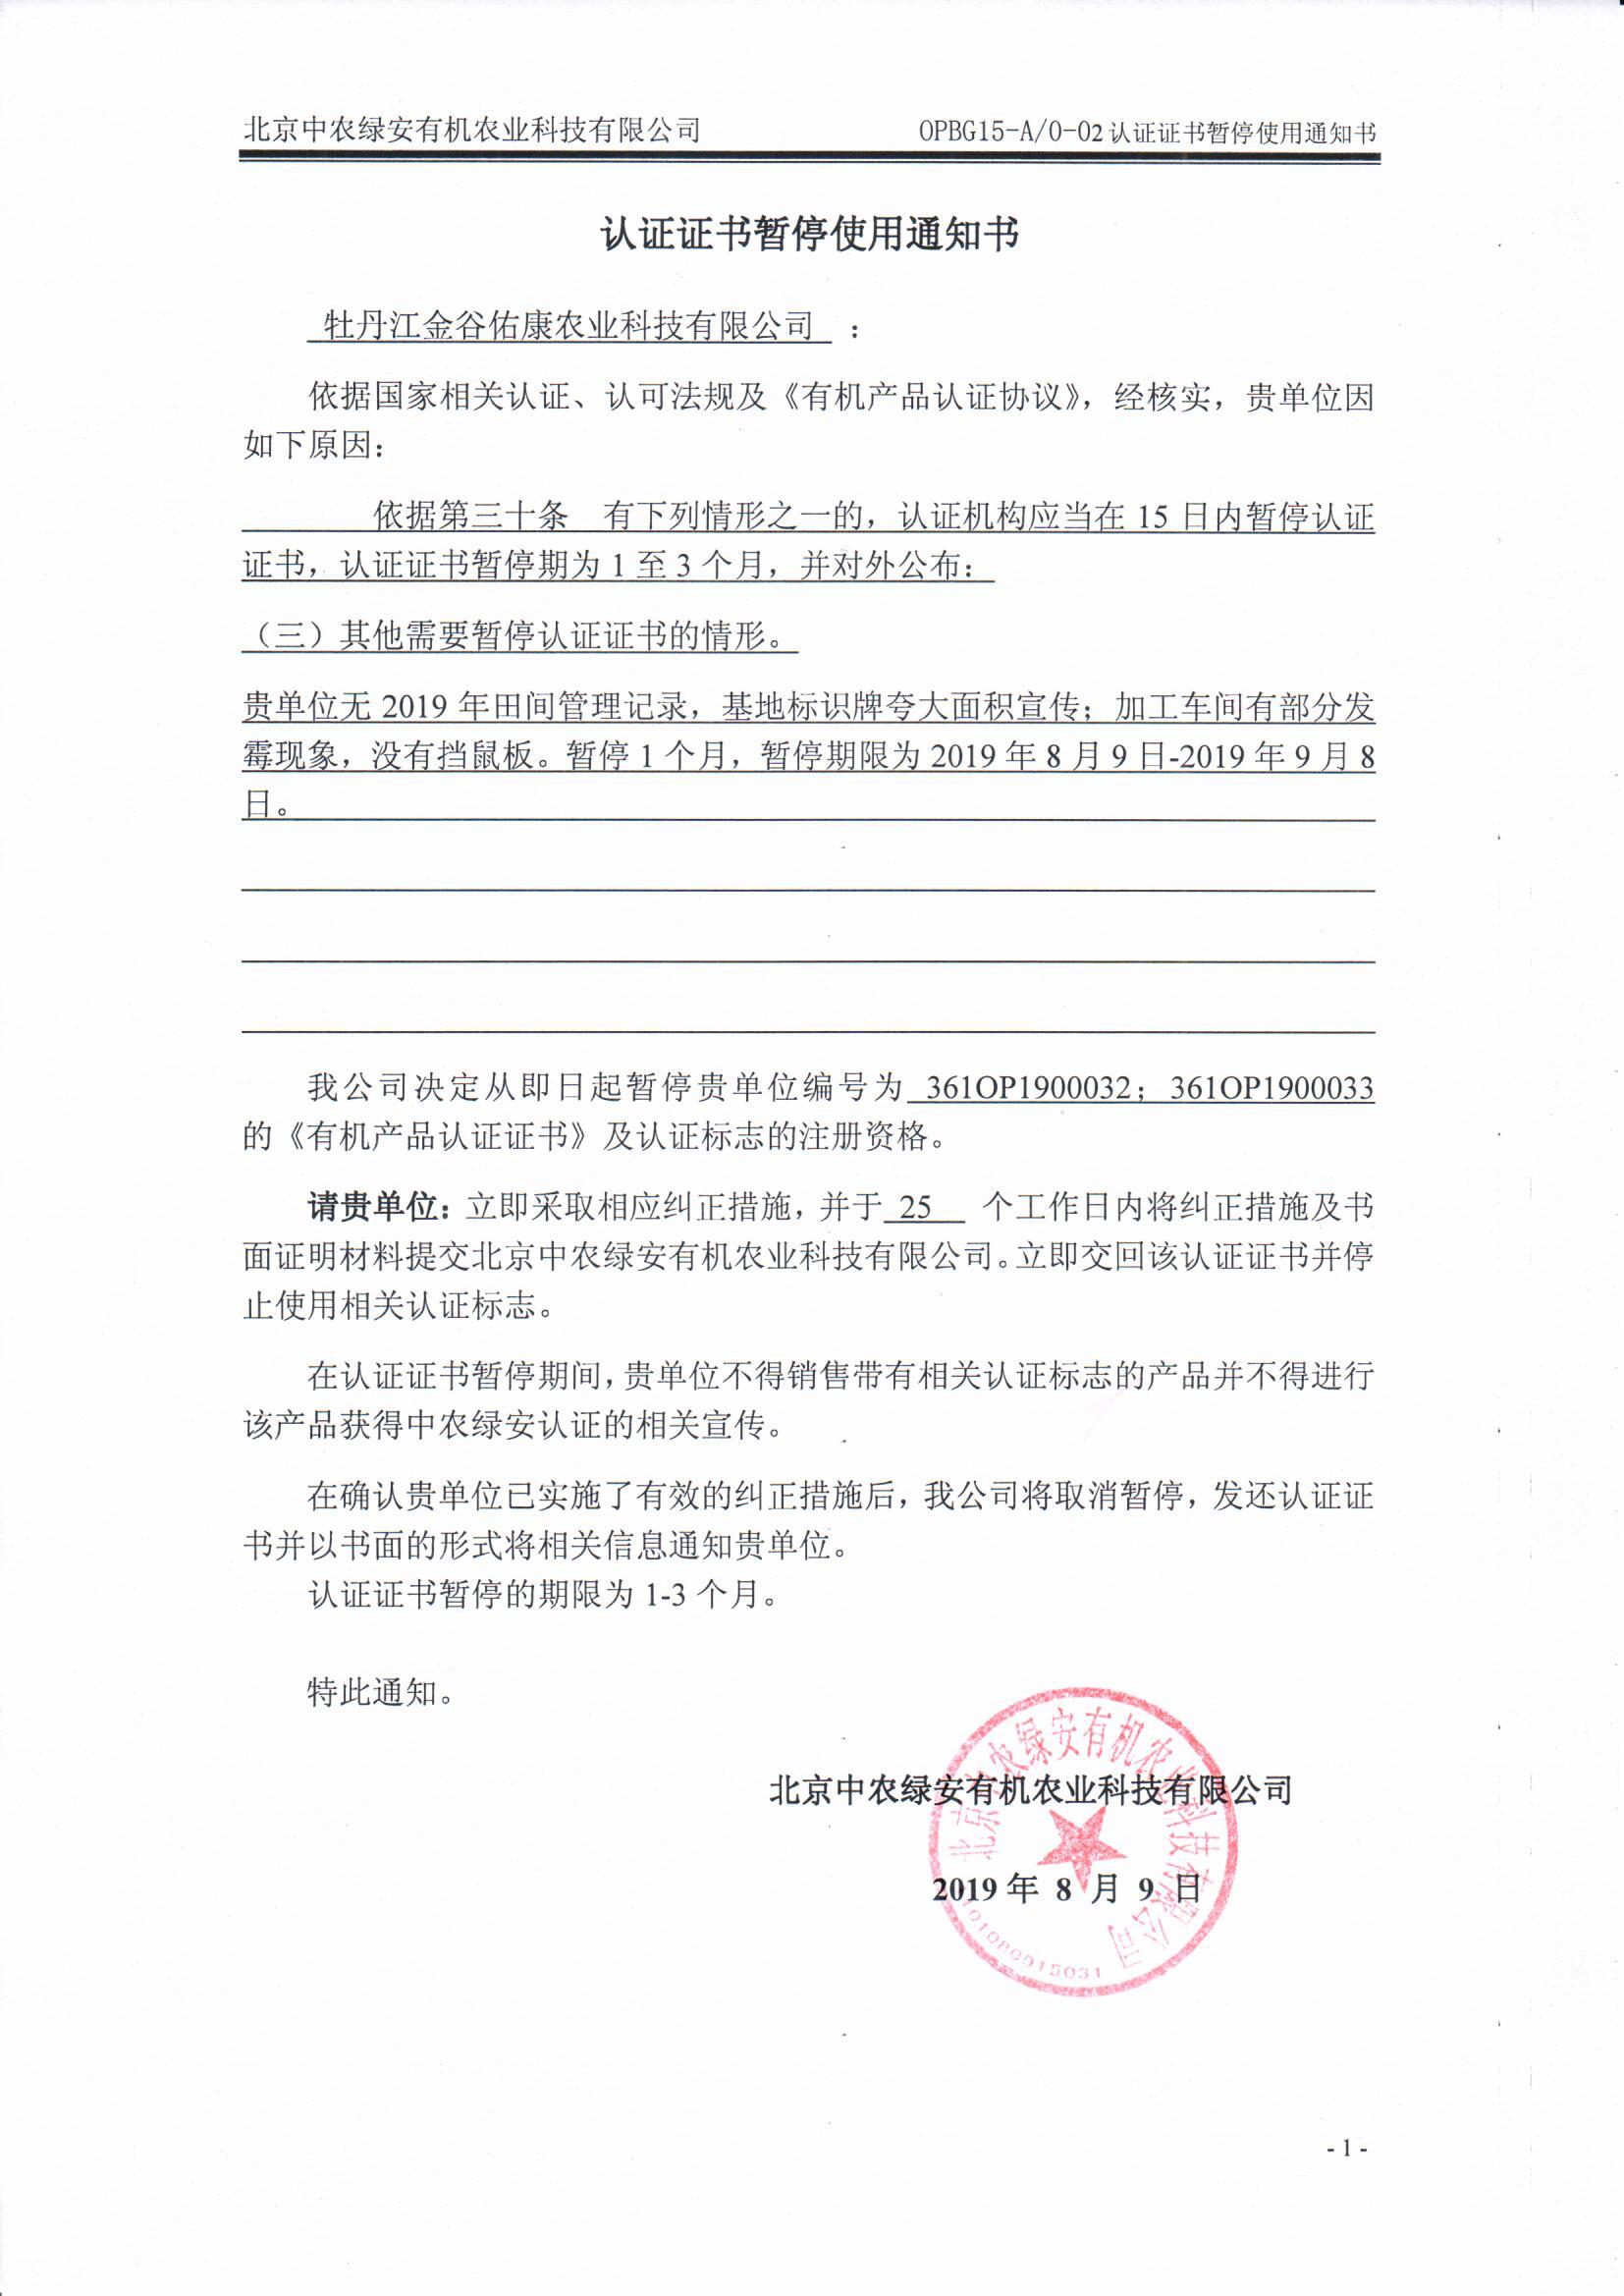 牡丹江金谷佑康农业科技有限公司证书暂停通知书